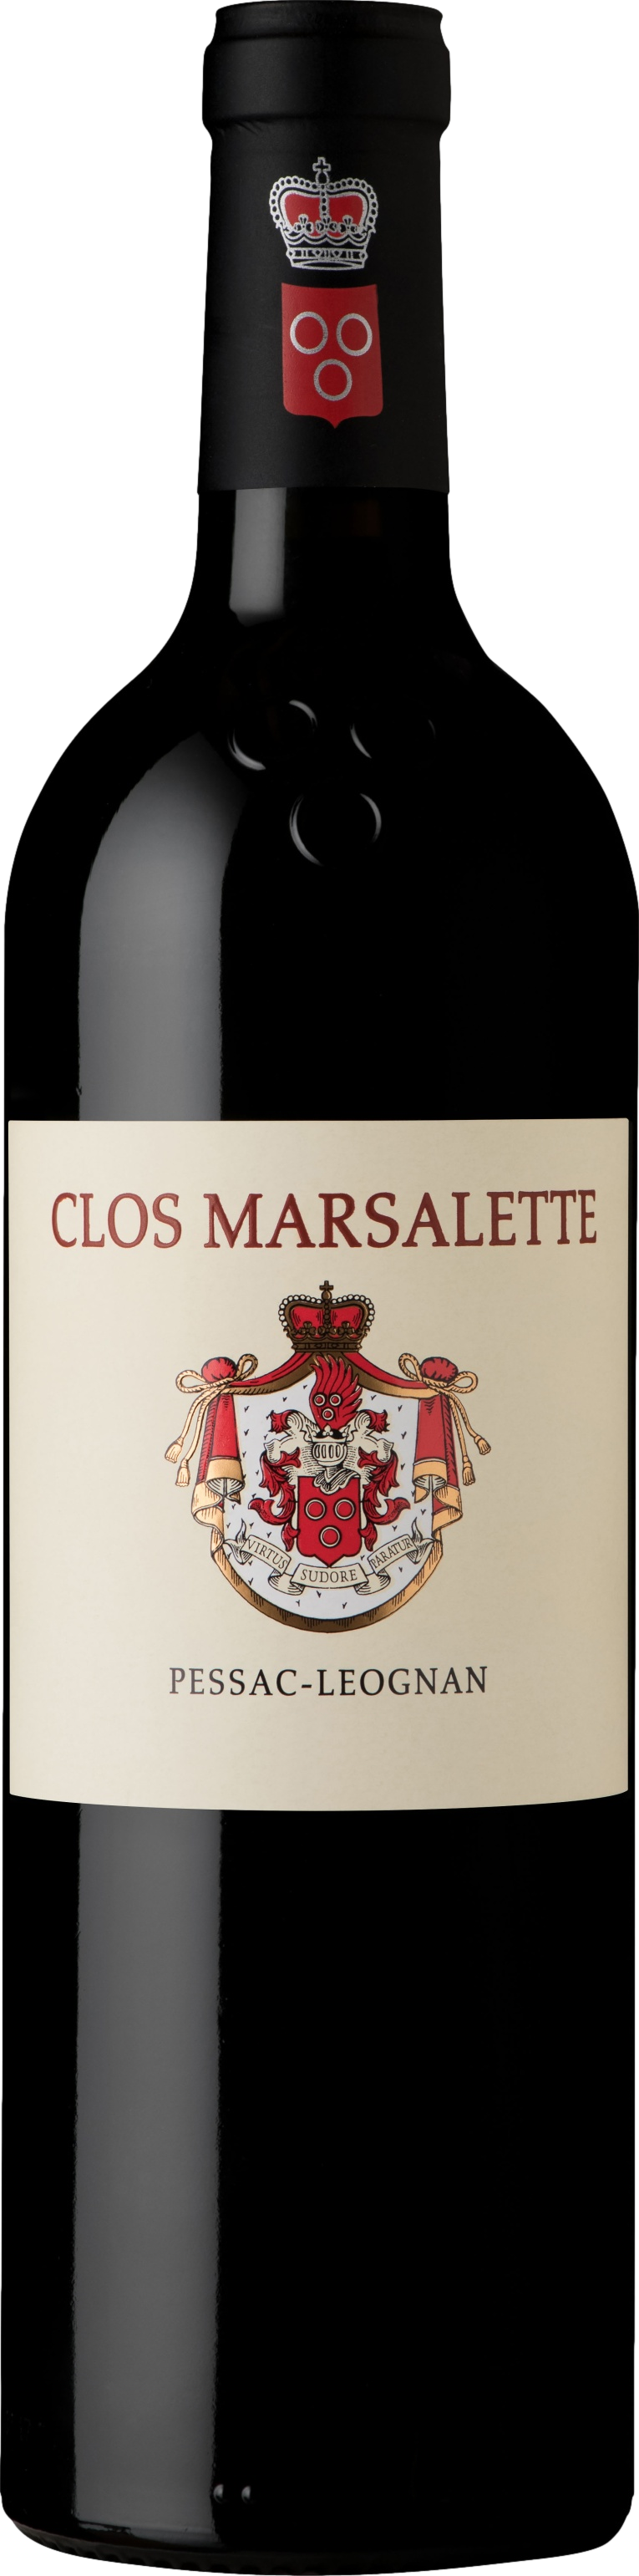 Chateau Clos Marsalette Pessac-Leognan 2017 3258691591834